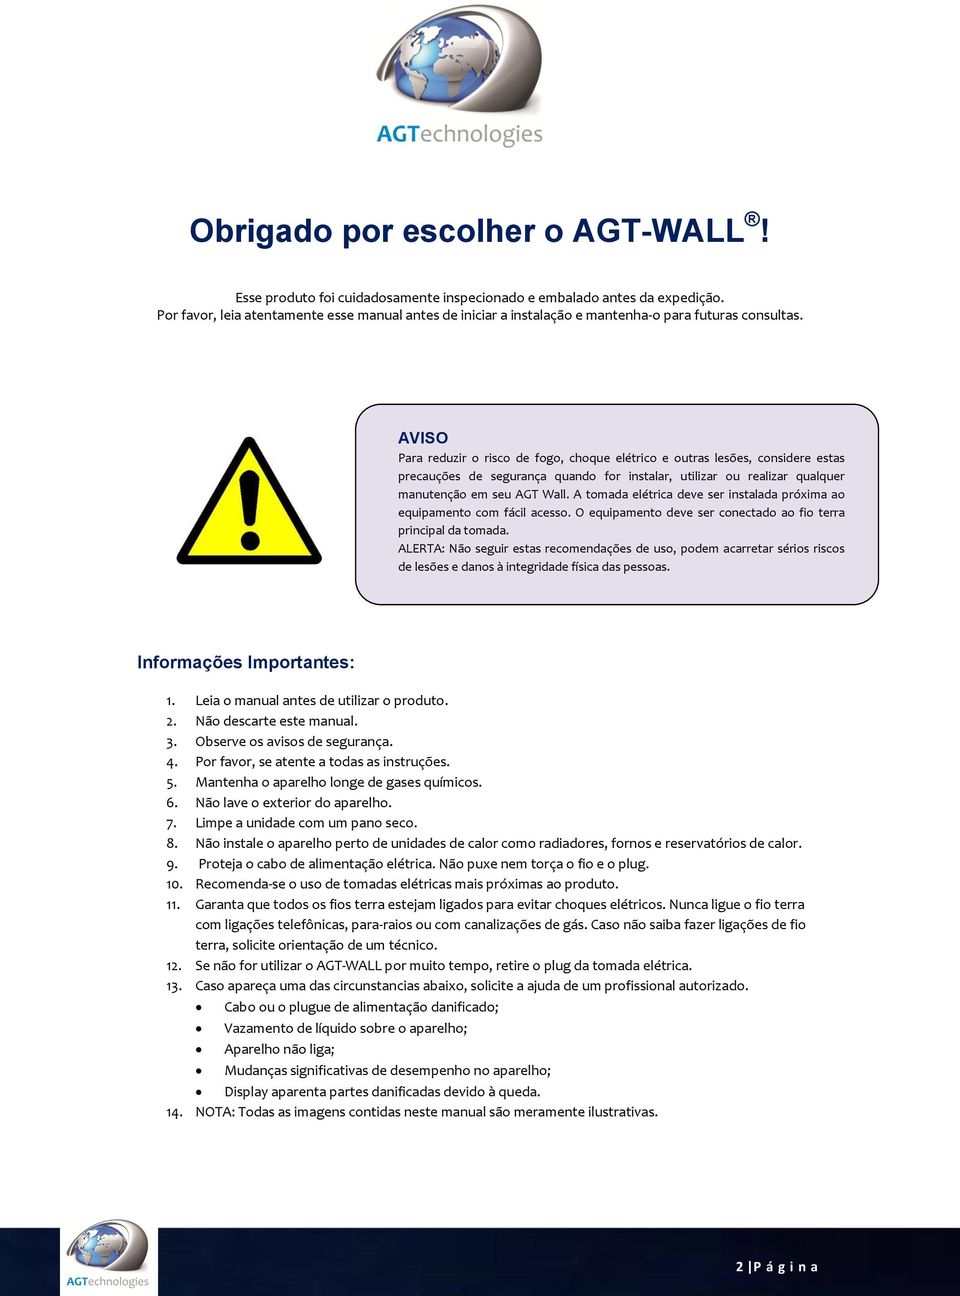 AVISO Para reduzir o risco de fogo, choque elétrico e outras lesões, considere estas precauções de segurança quando for instalar, utilizar ou realizar qualquer manutenção em seu AGT Wall.